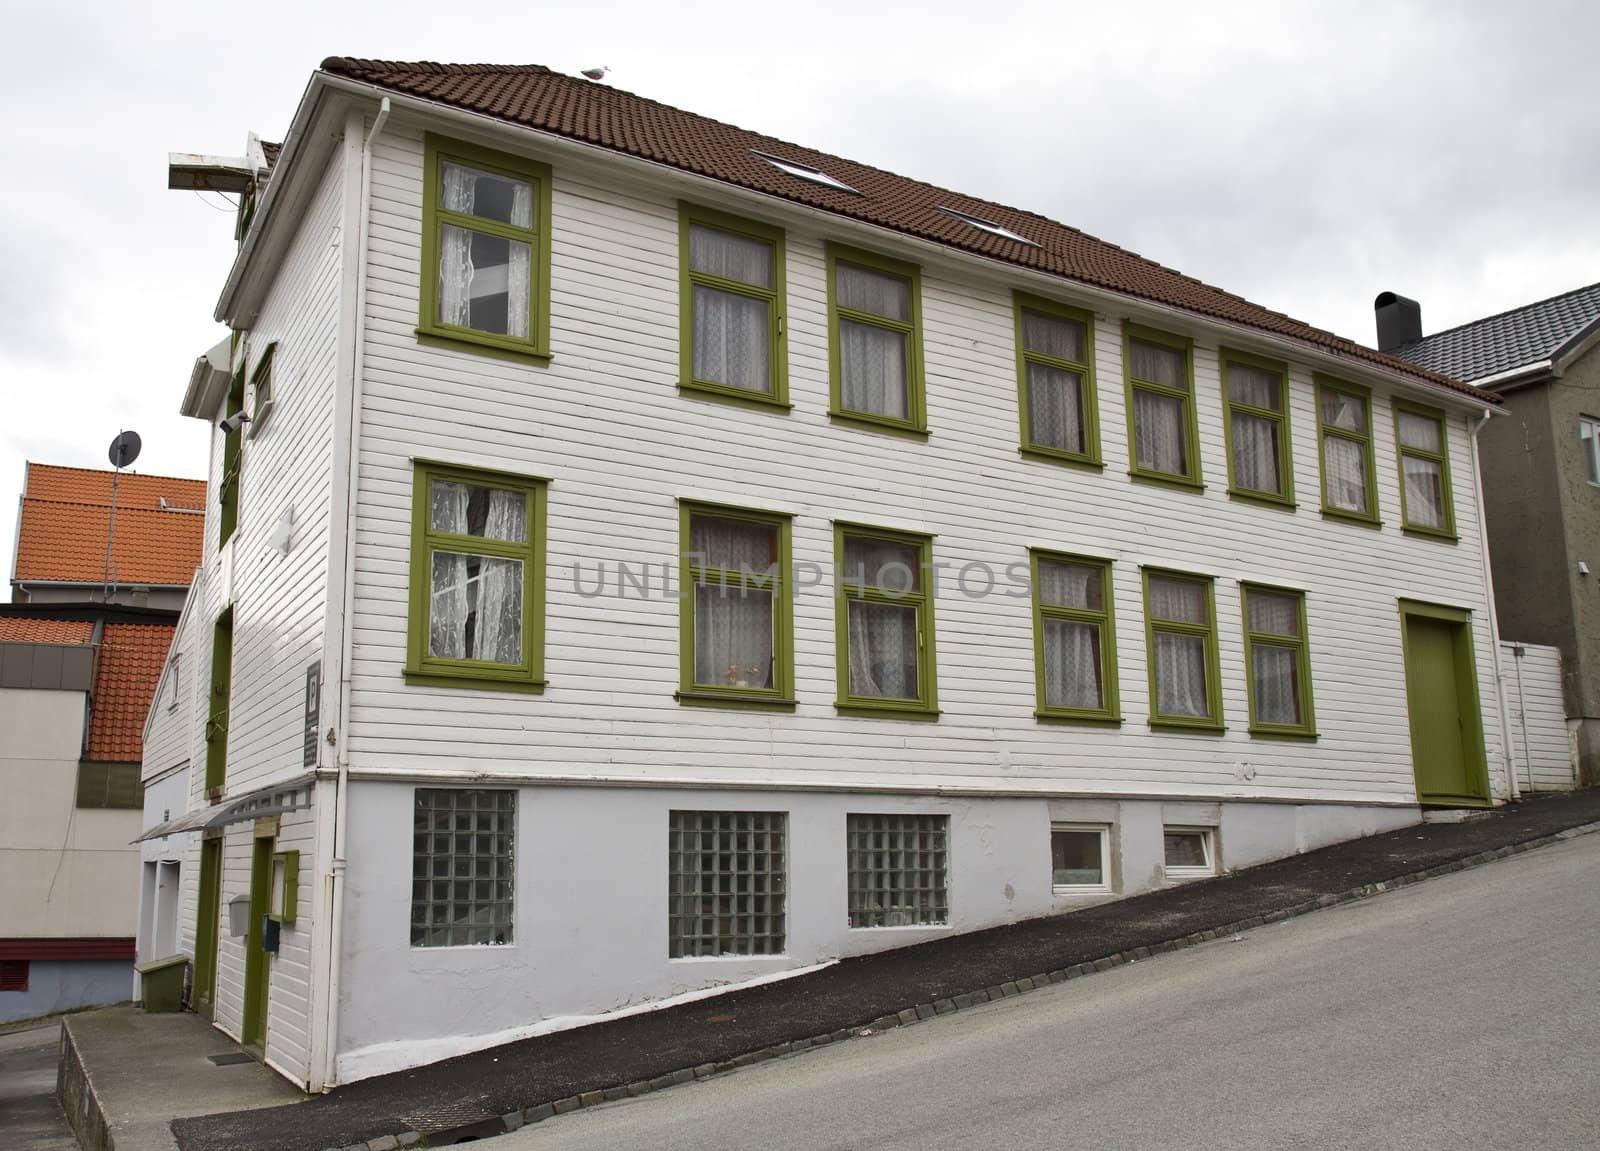 single old house on steep road in Stavanger, Norway